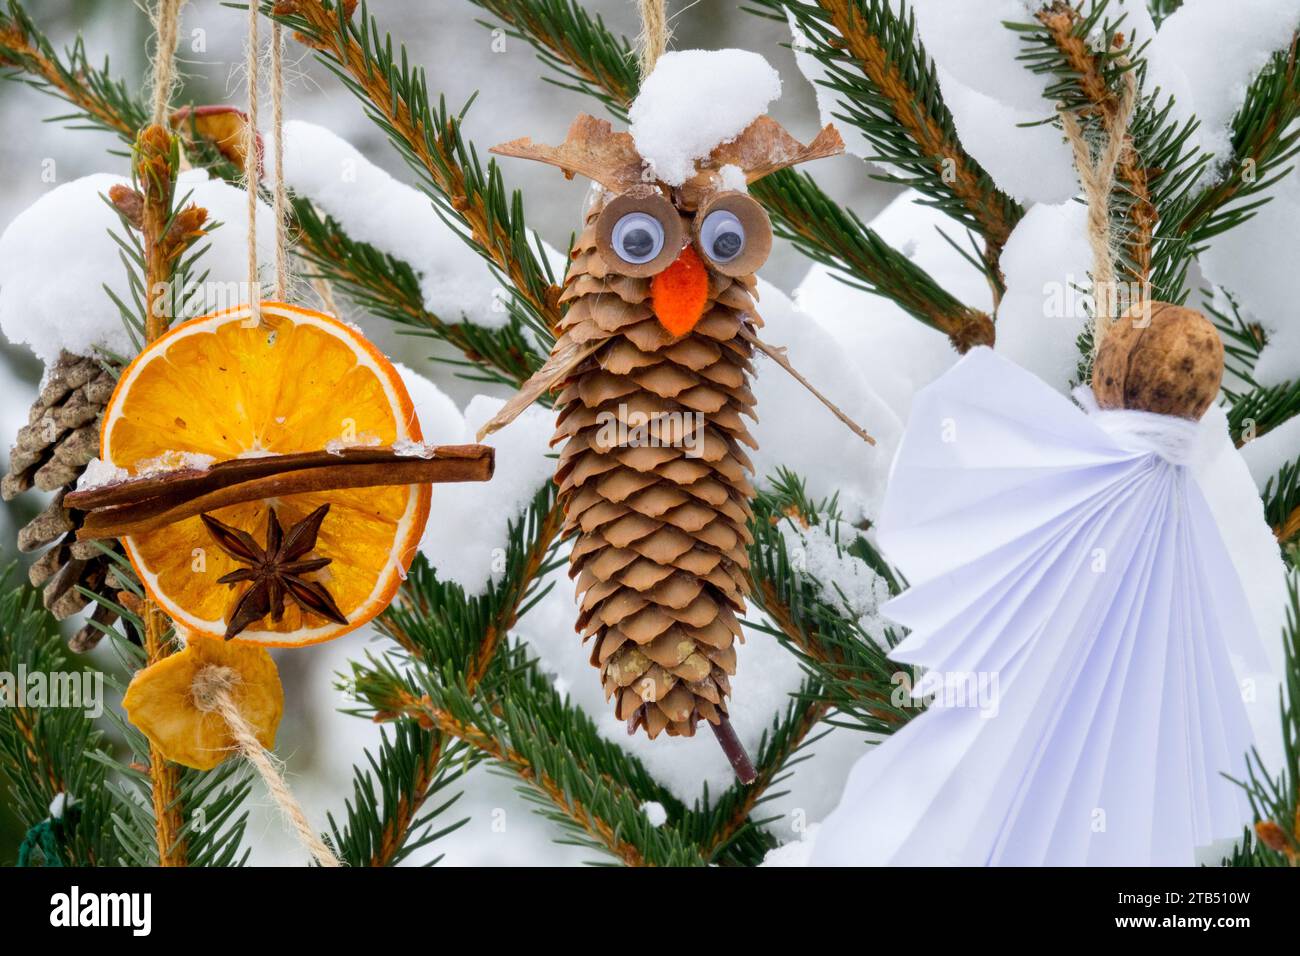 Décoration de Noël à l'extérieur cône d'épinette de cannelle accroché sur des brindilles d'arbre couvertes de neige Banque D'Images